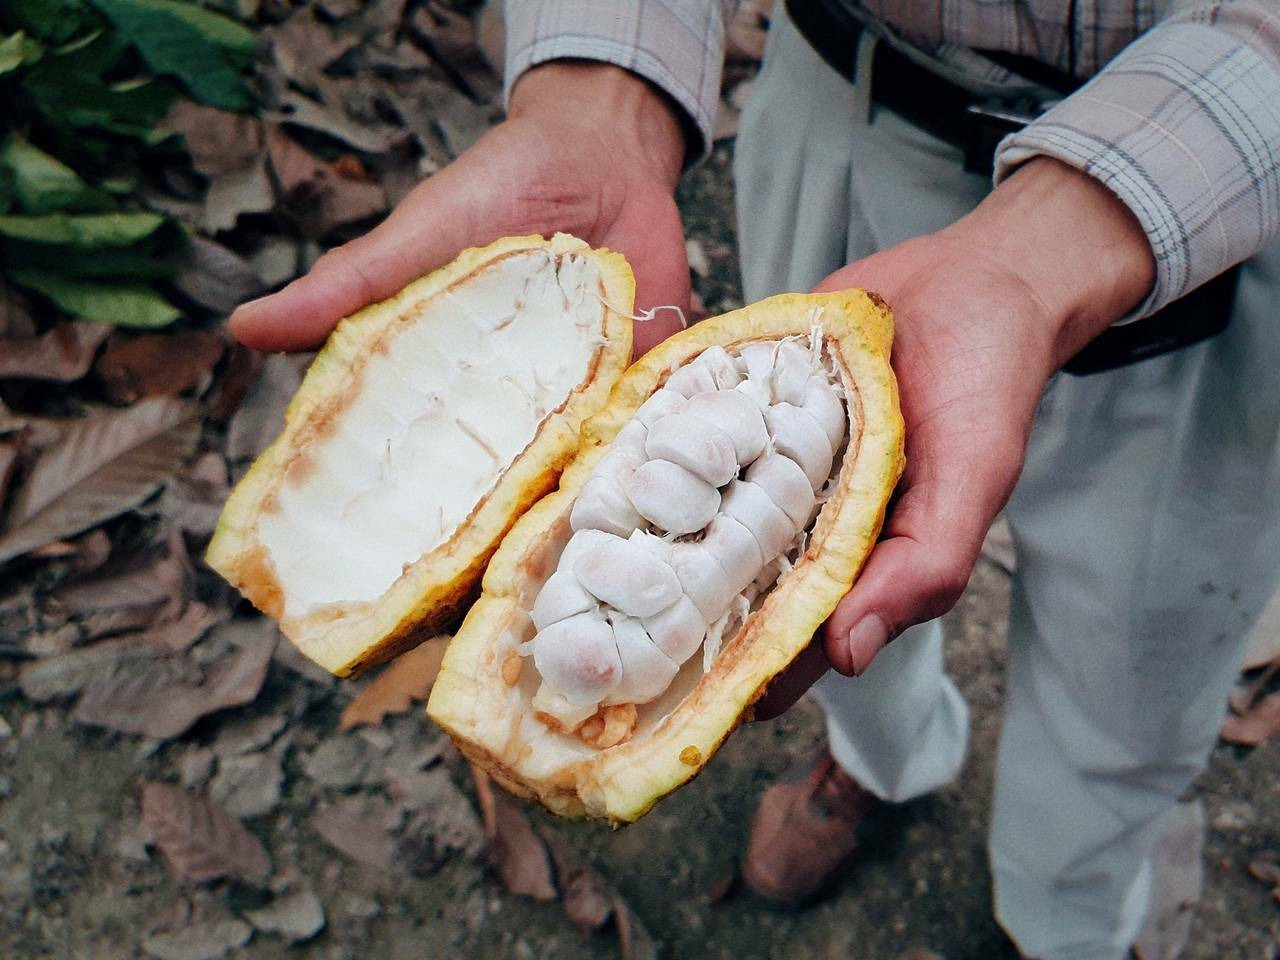 傳說可可豆起源於4000多年前的亞馬遜地區